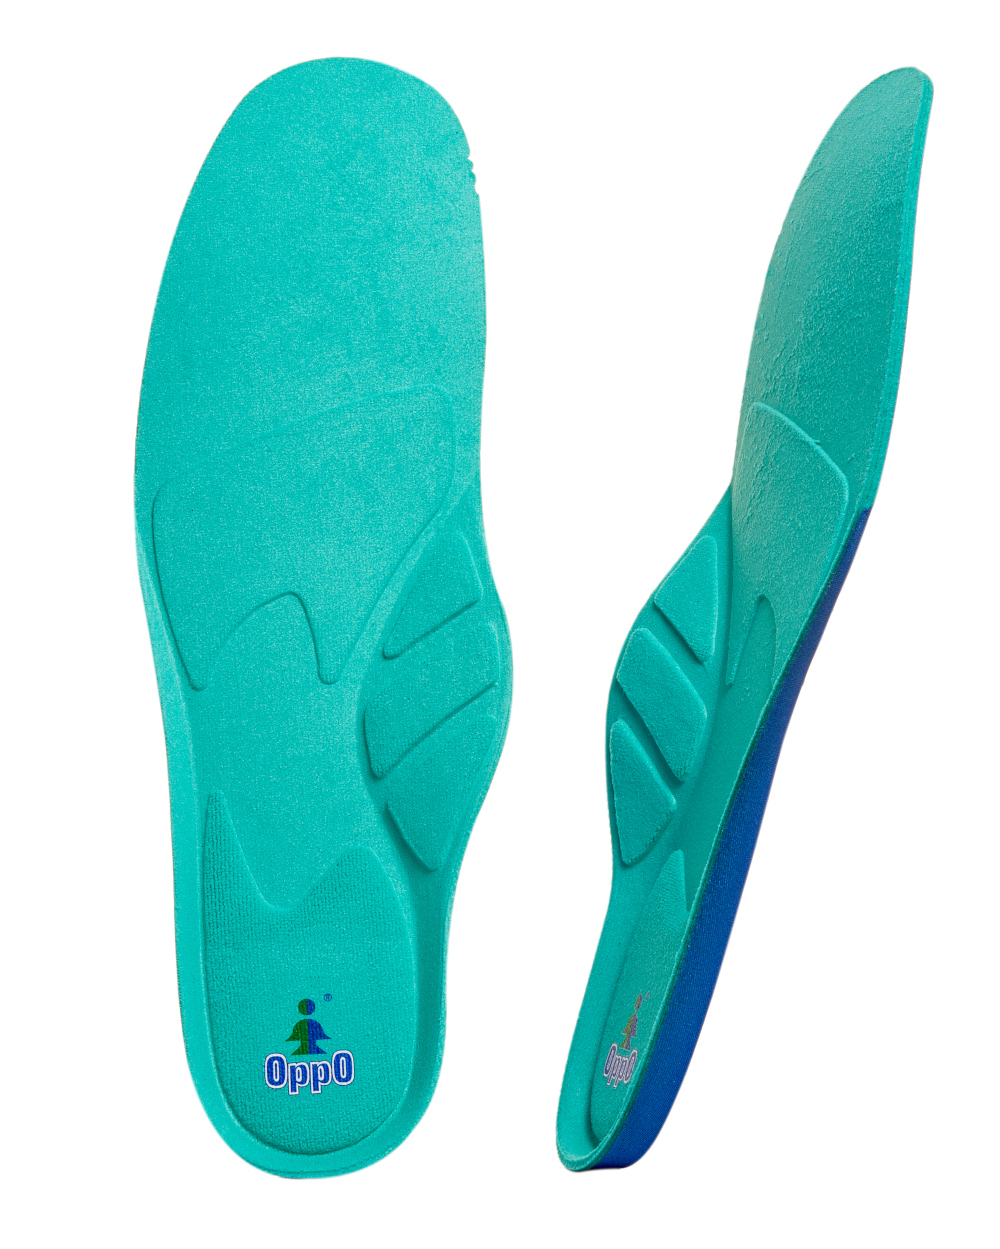 Стельки для обуви медицинские каркасные OPPO Medical 5003 зеленый р.36-39